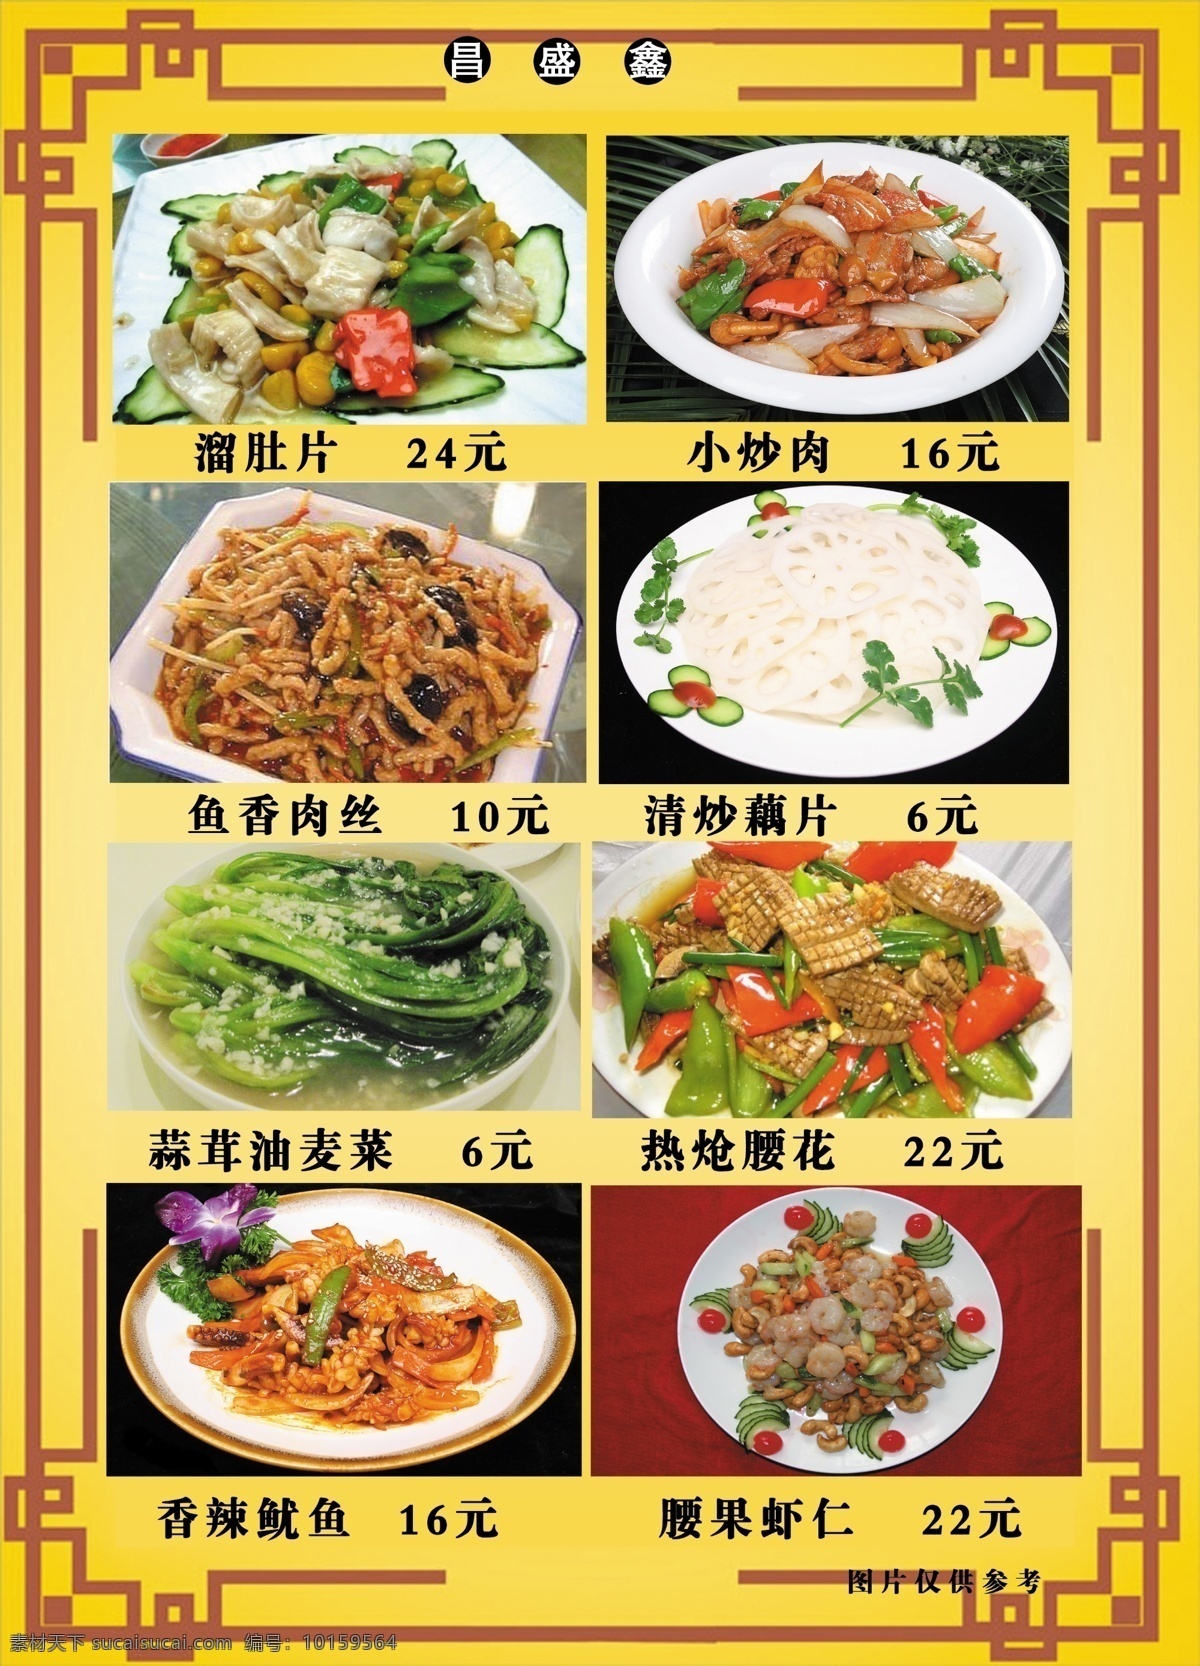 昌盛鑫菜谱9 食品餐饮 菜单菜谱 分层psd 平面广告 海报 设计素材 平面模板 psd源文件 黄色